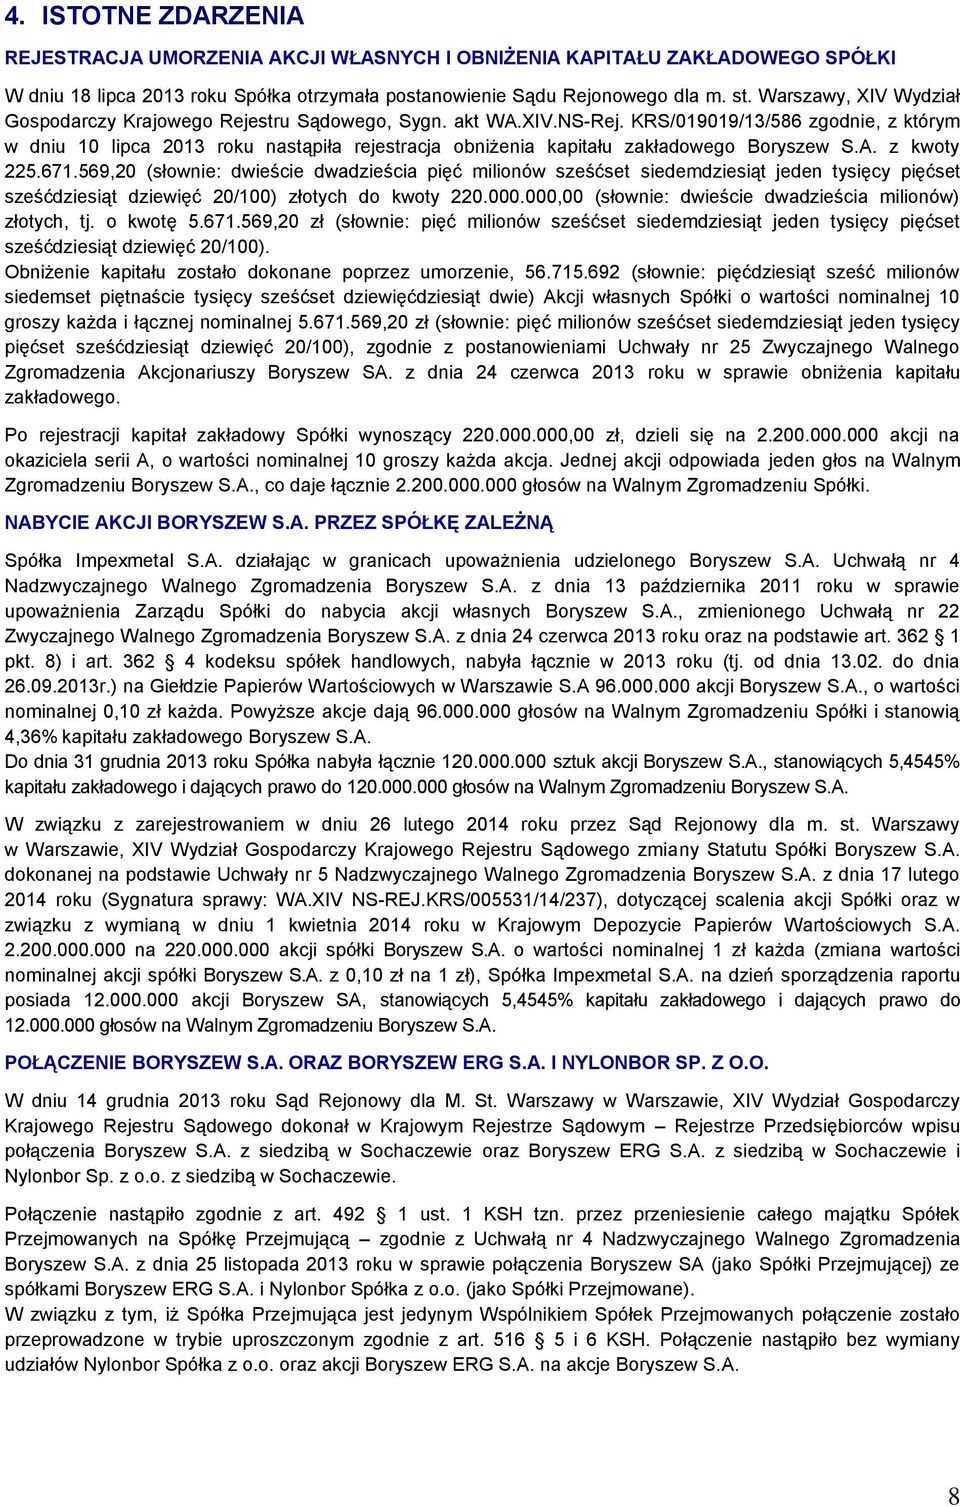 KRS/019019/13/586 zgodnie, z którym w dniu 10 lipca 2013 roku nastąpiła rejestracja obniżenia kapitału zakładowego Boryszew S.A. z kwoty 225.671.